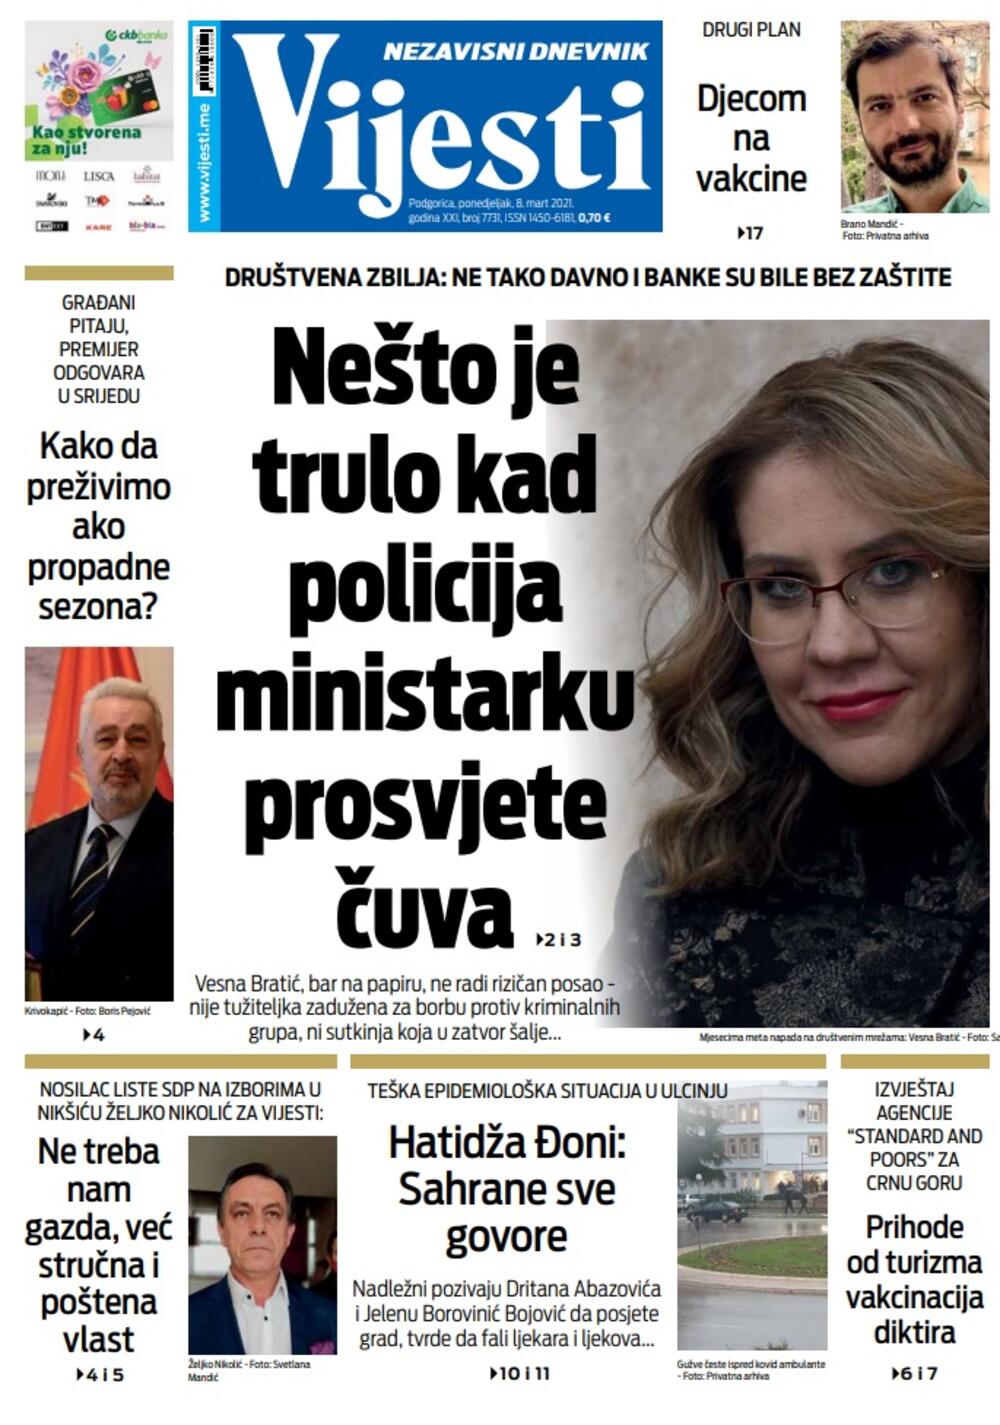 Naslovna strana "Vijesti" za ponedjeljak 8. mart 2021. godine, Foto: Vijesti